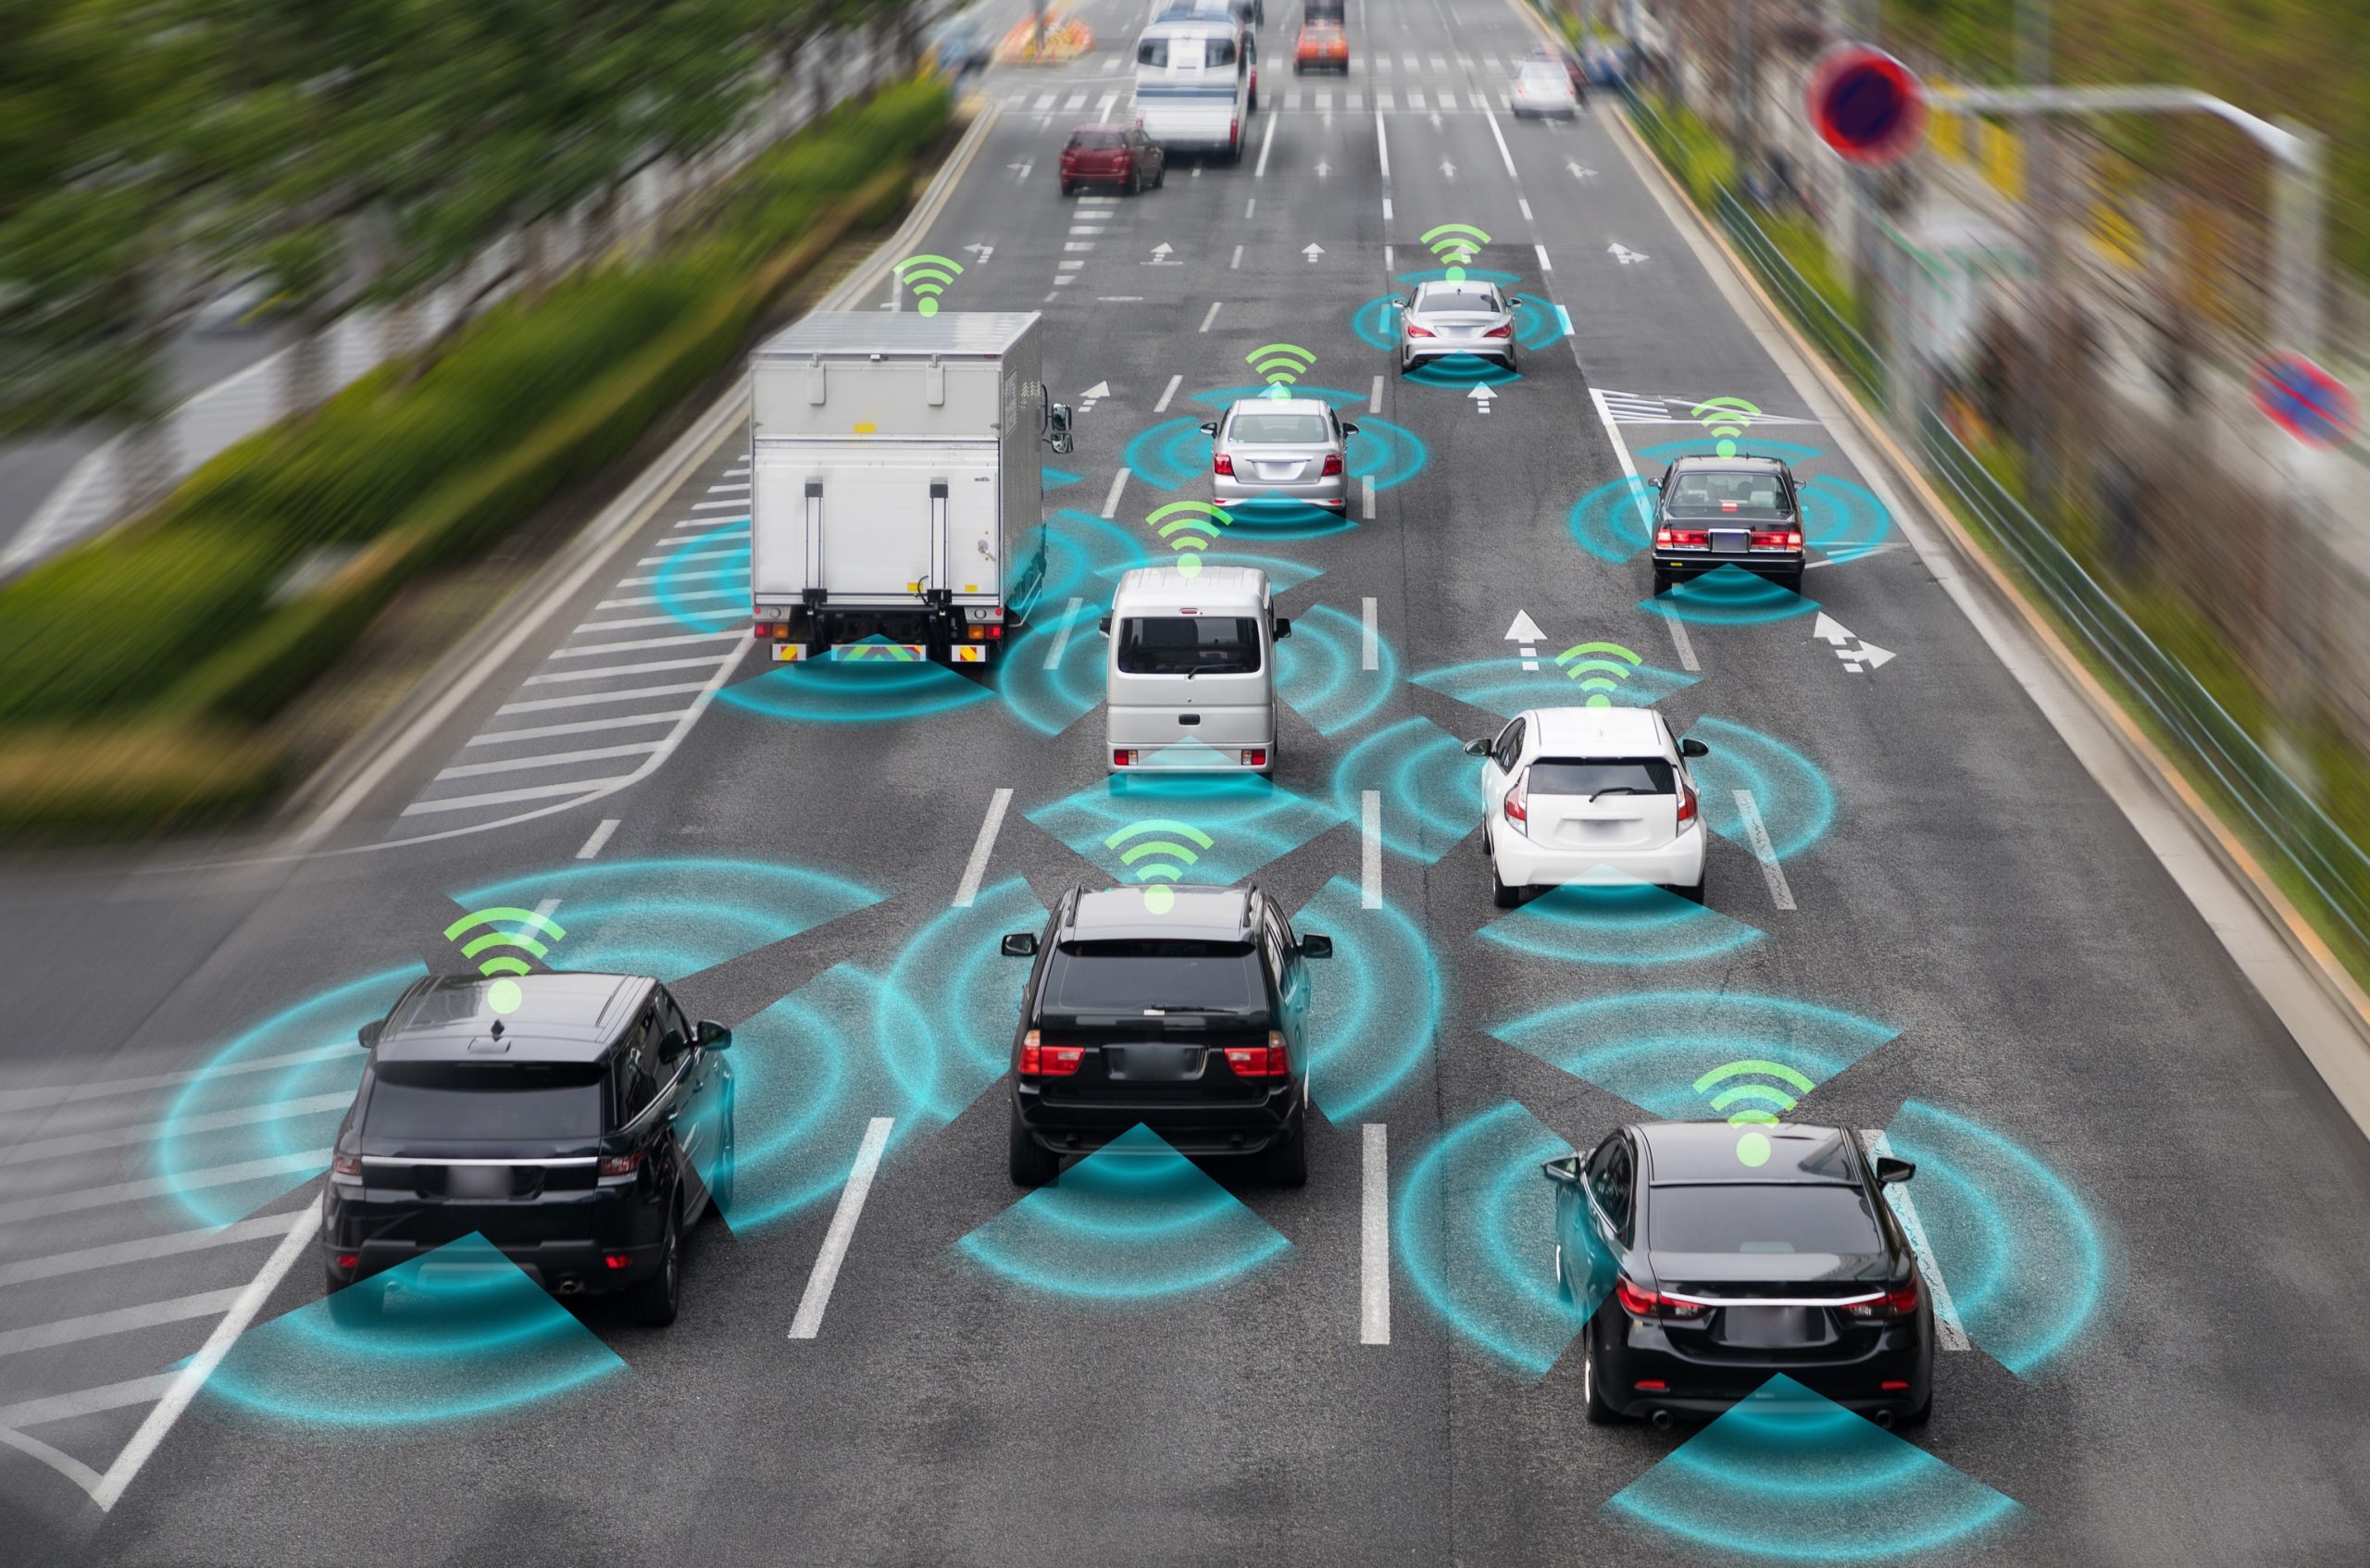 Apple wants to develop its own sensors for autonomous cars